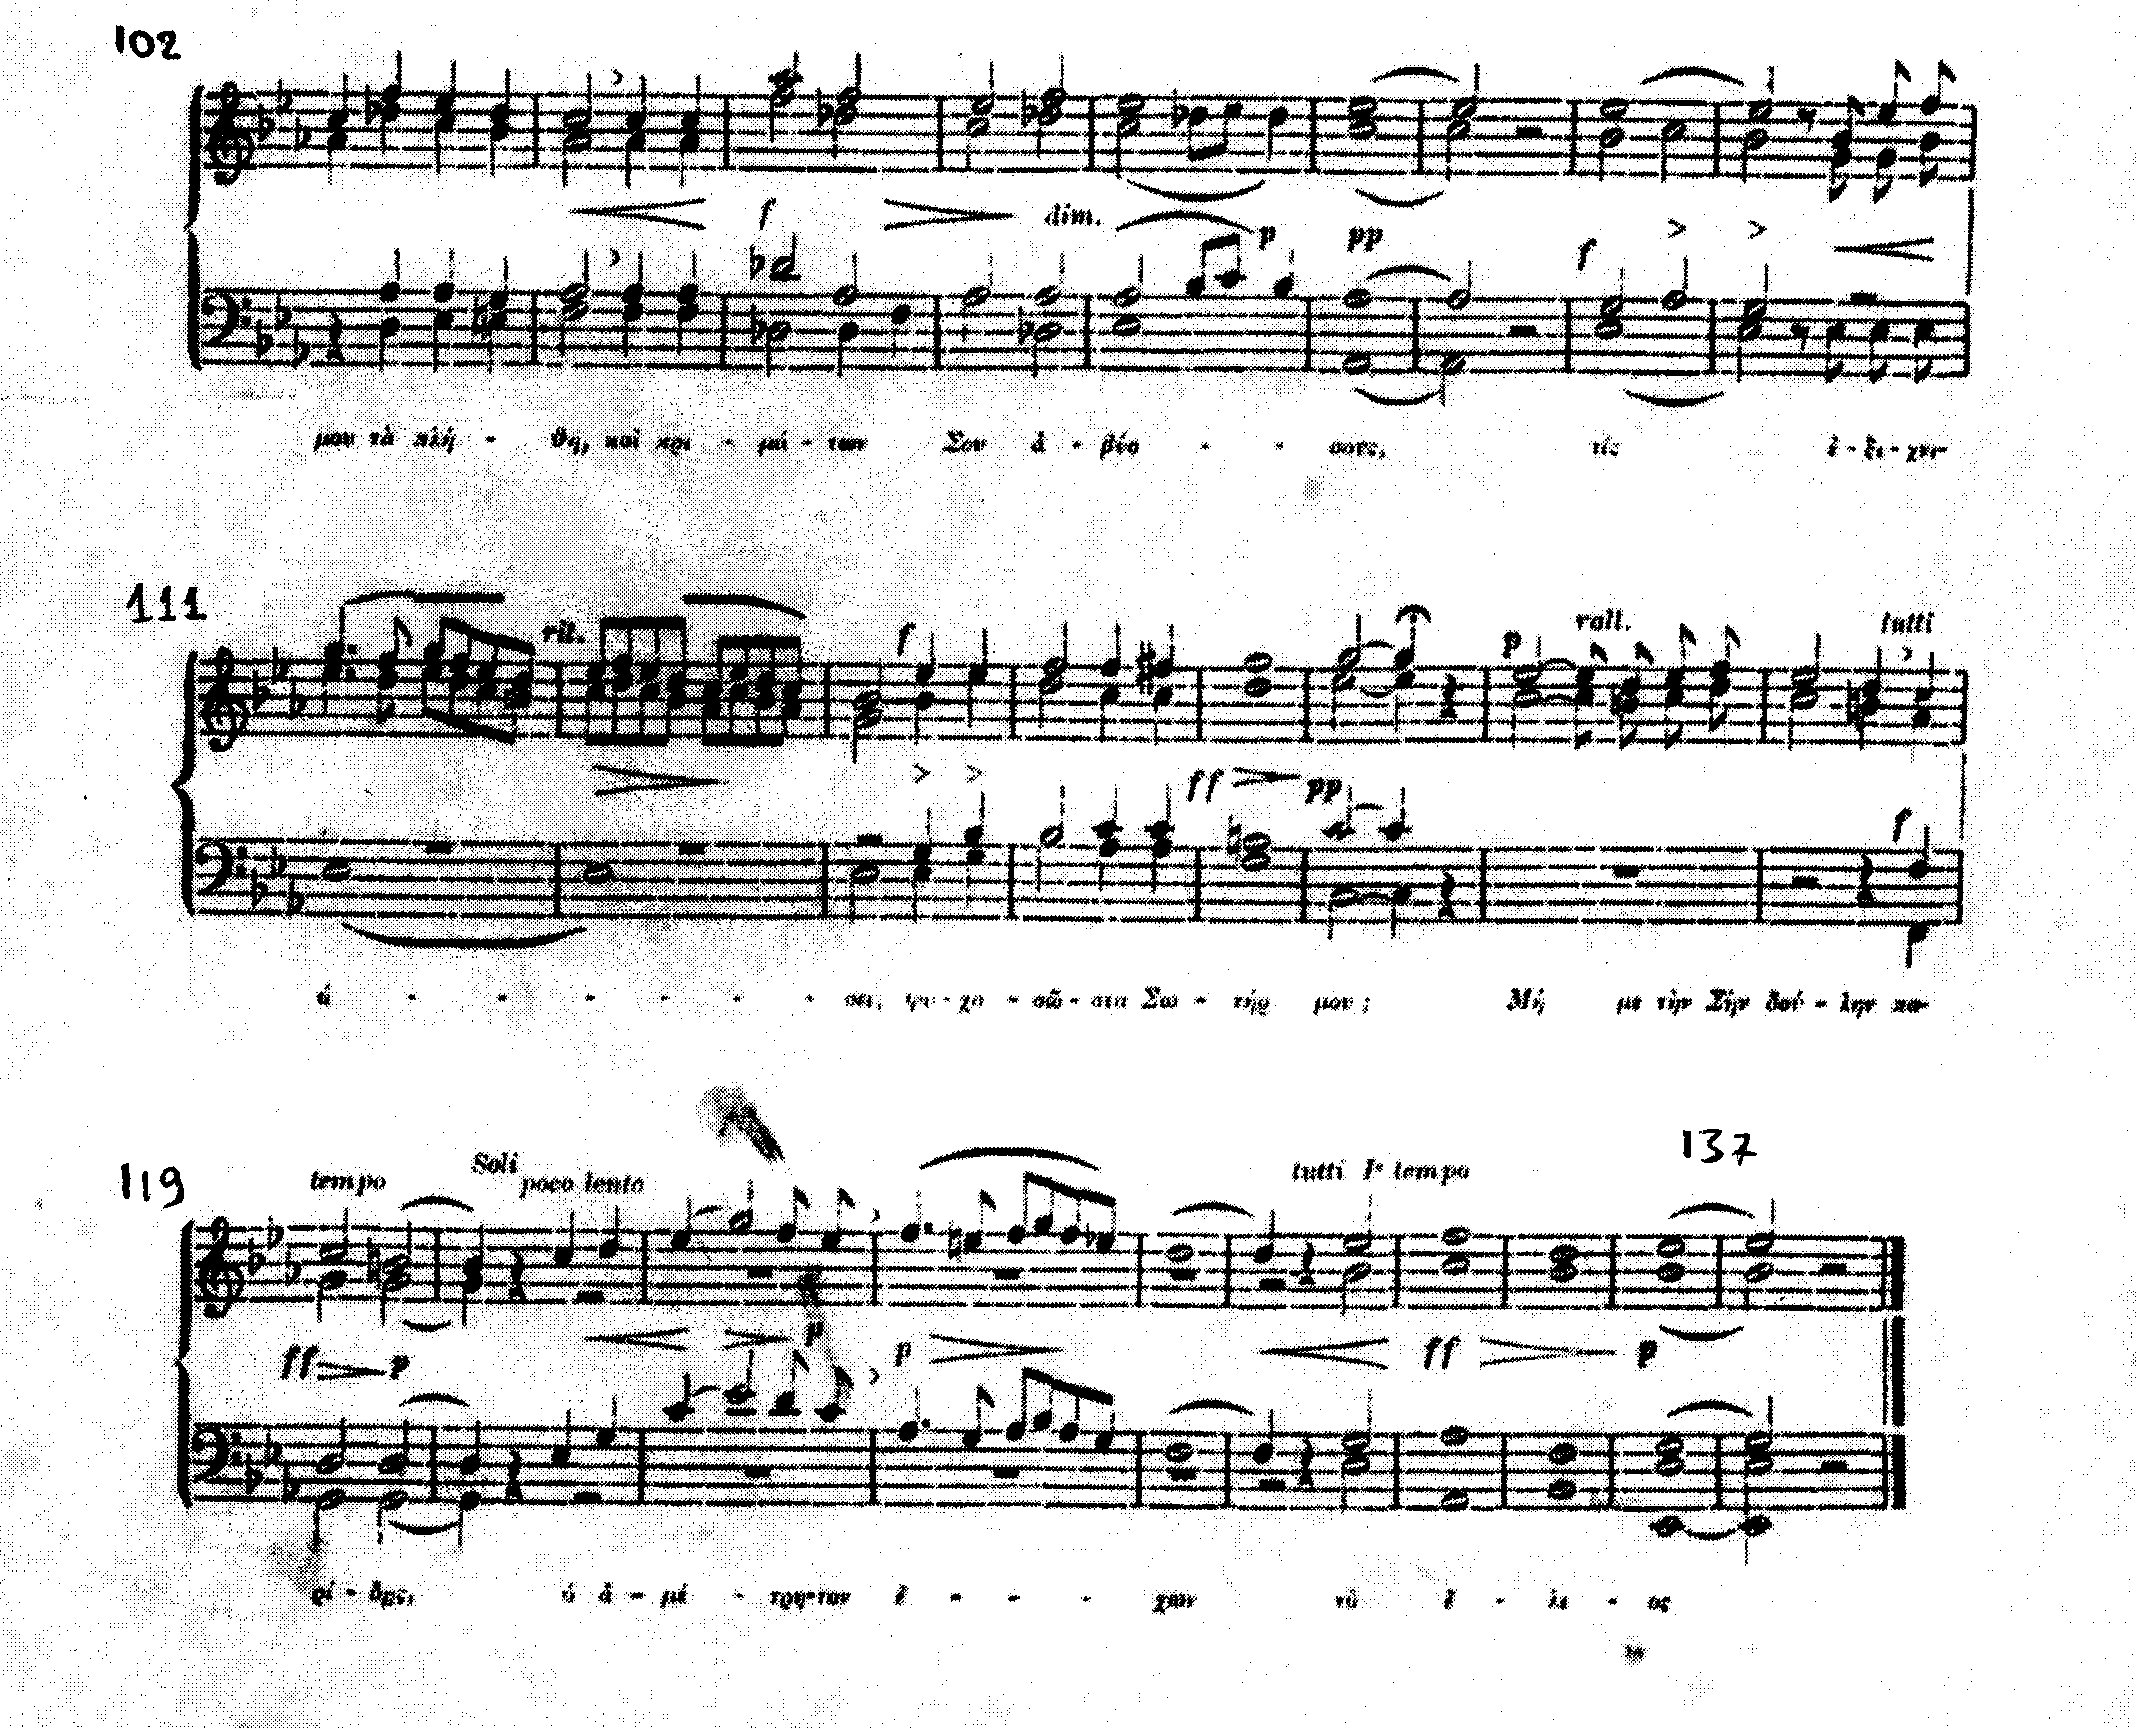 Παρ. 5, µ. 102-128 Ο Μίκης (Μιχαήλ) Θεοδωράκης (1925), συνθέτης και διευθυντής ορχήστρας, ασχολήθηκε σχεδόν µε όλα τα είδη σύνθεσης.